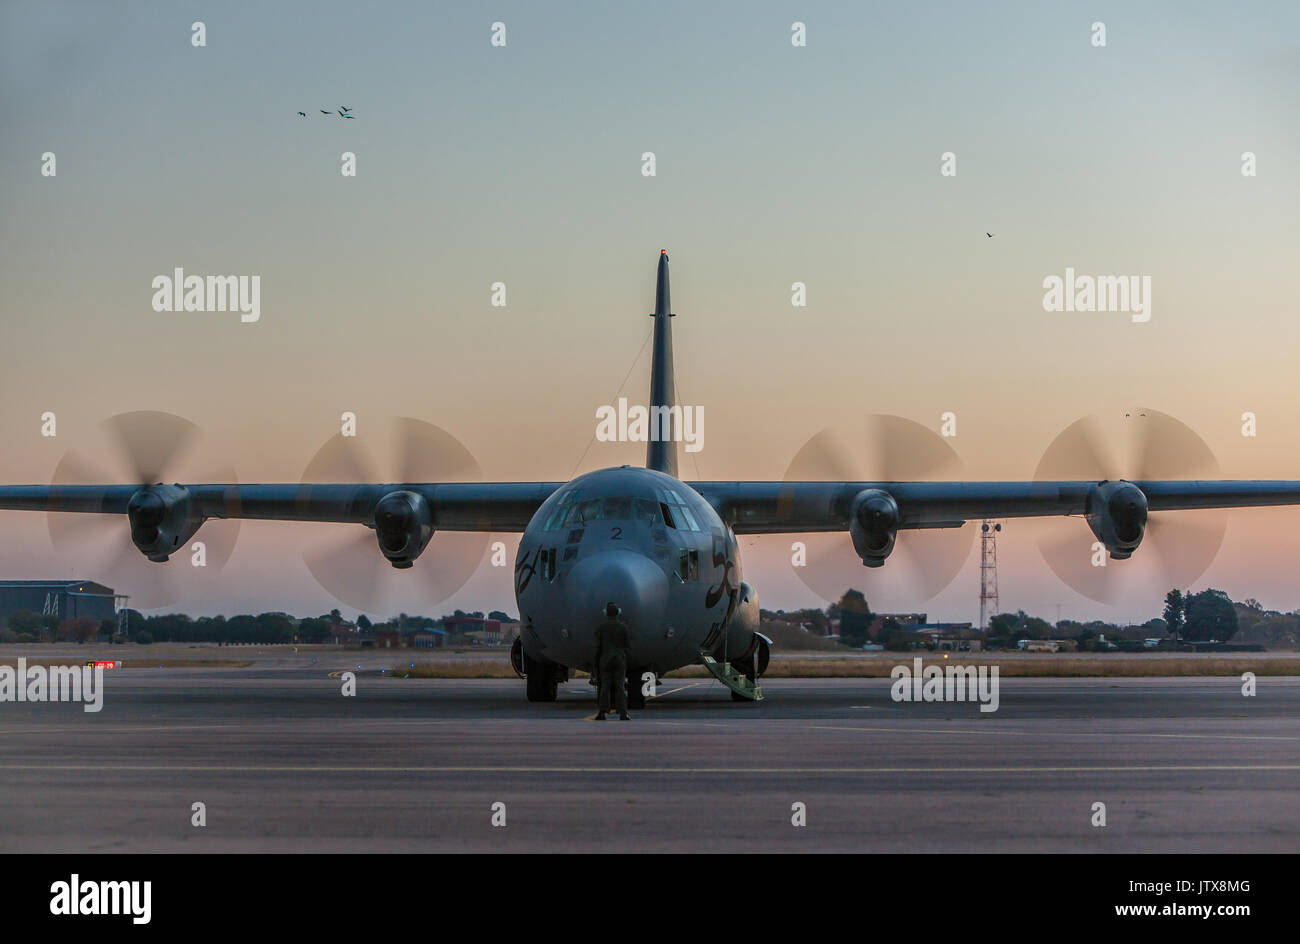 A South African Air Force C-130 Hercules Transportflugzeug, im Service seit mehr als 50 Jahren, kehrt nach einem frühen Abend Flug mit Ger zur Basisstation Stockfoto